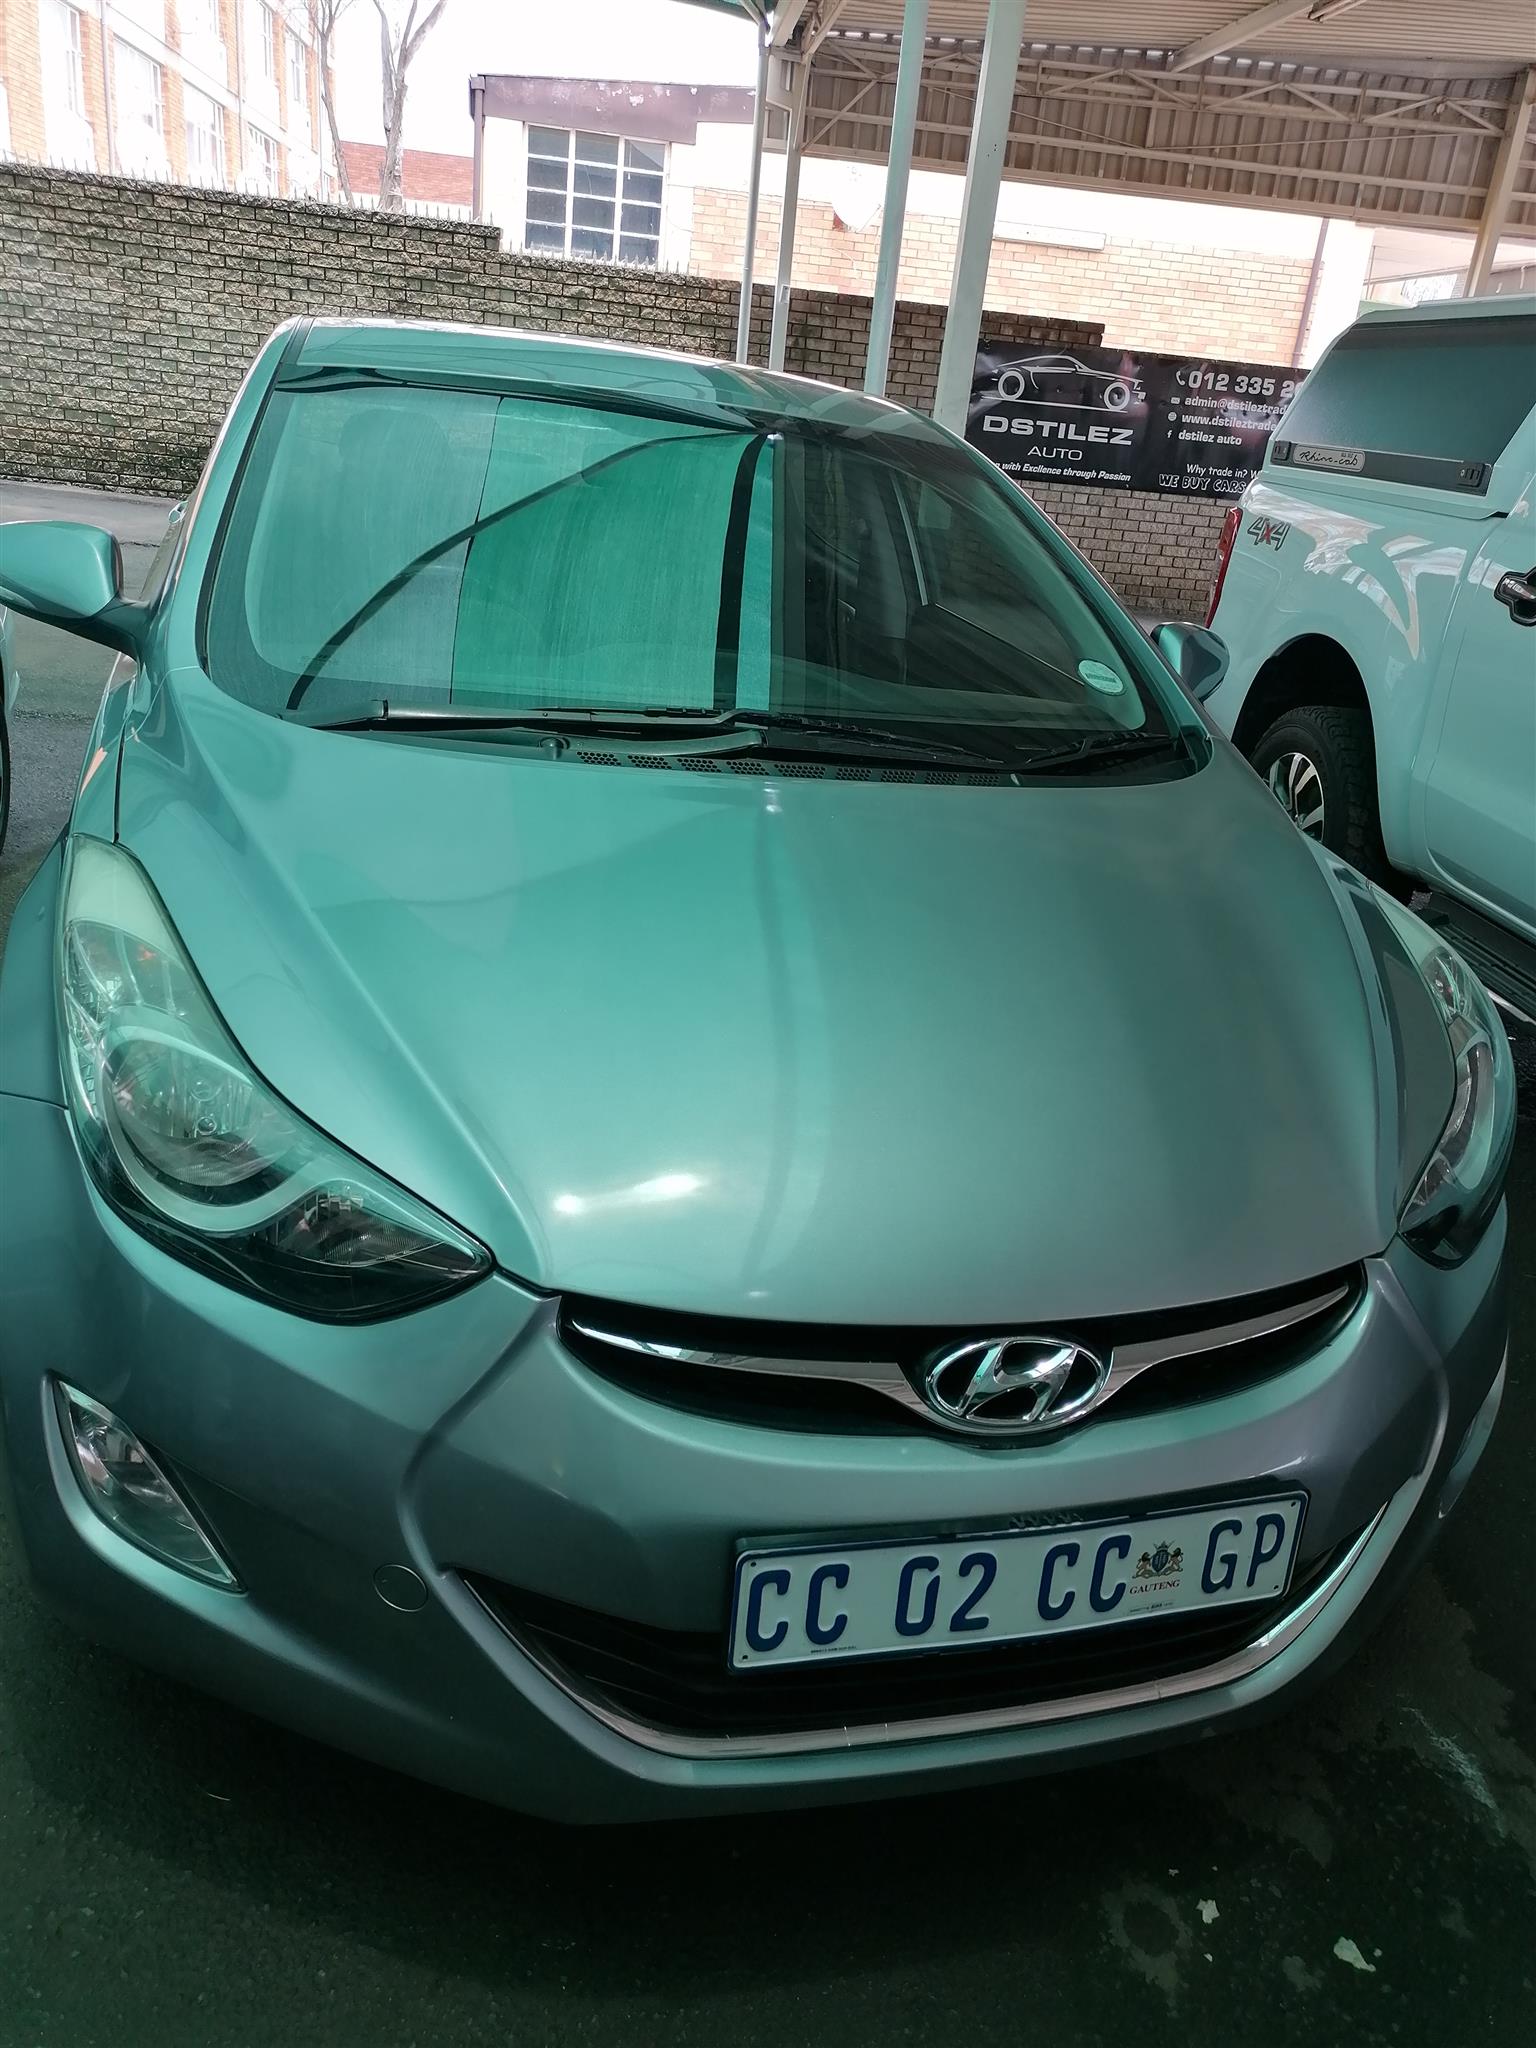 2012 Hyundai elantra 1.6 GLS silver color with 78000km 